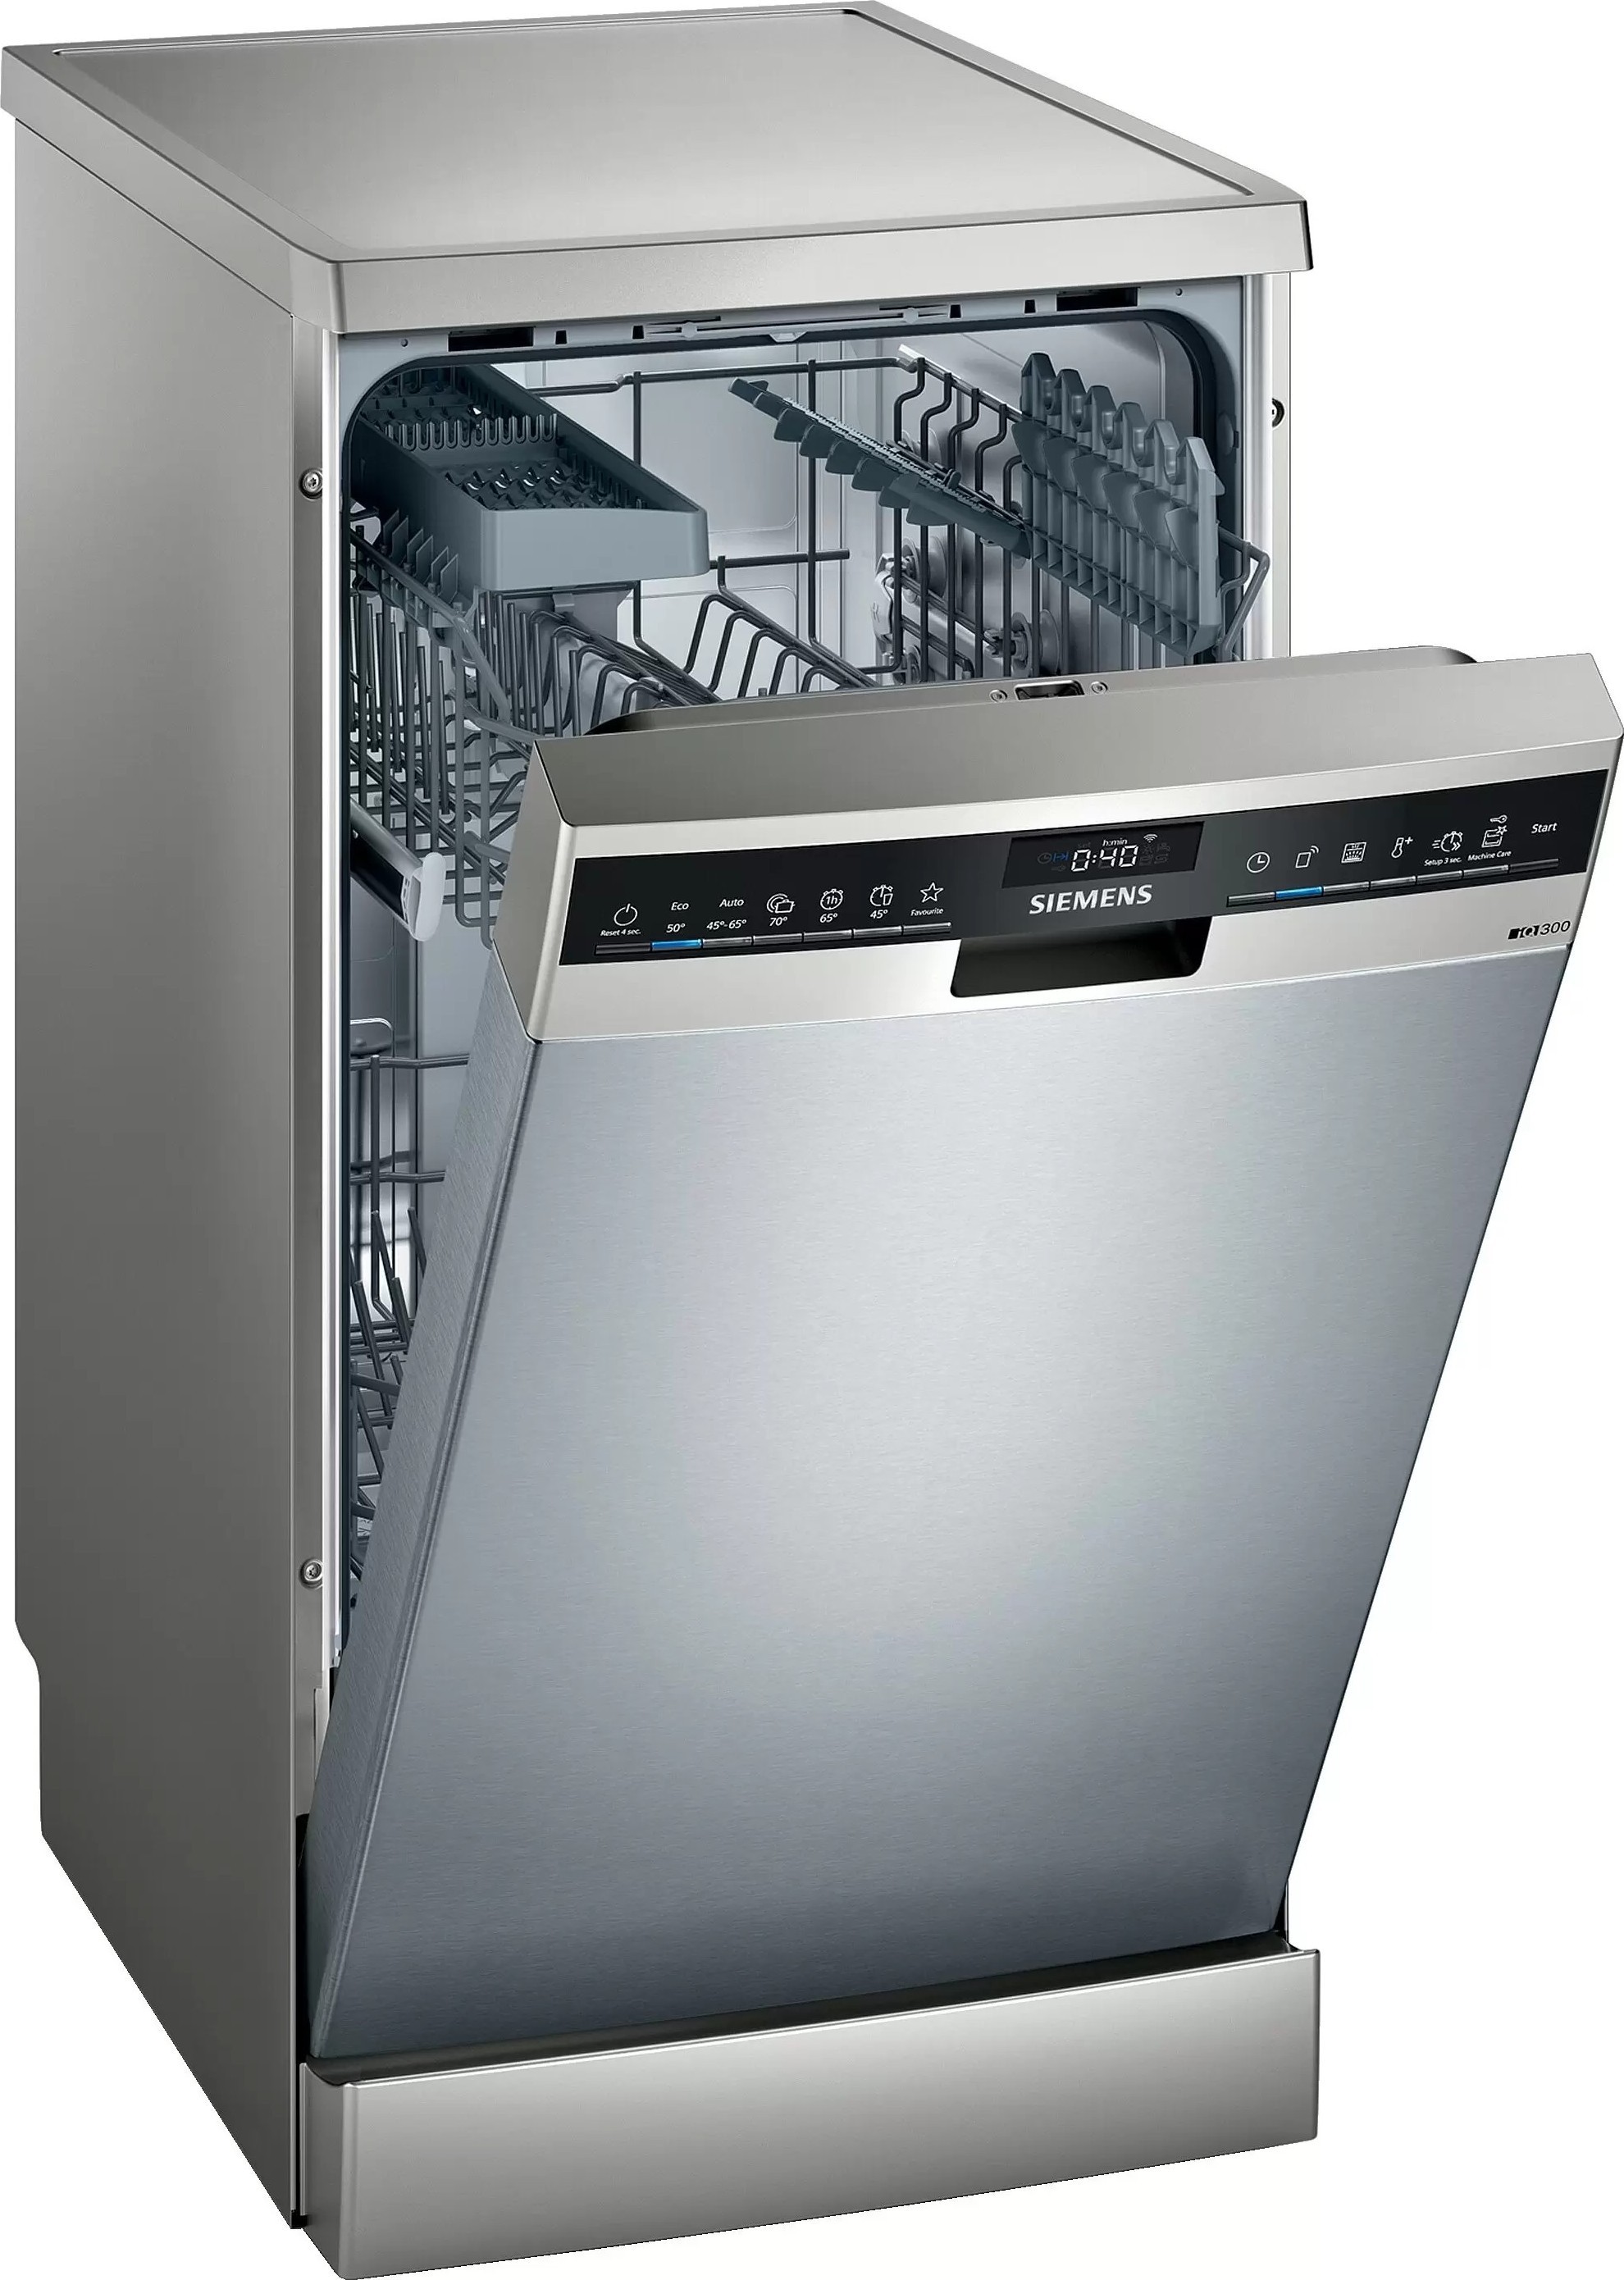 Встраиваемые посудомоечные машины samsung. Посудомоечная машина Siemens SR 25m884. Посудомоечная машина Siemens iq500 SR 256i00 te. Посудомоечная машина Siemens SR 25e207. Посудомоечная машина Siemens SF 24e234.